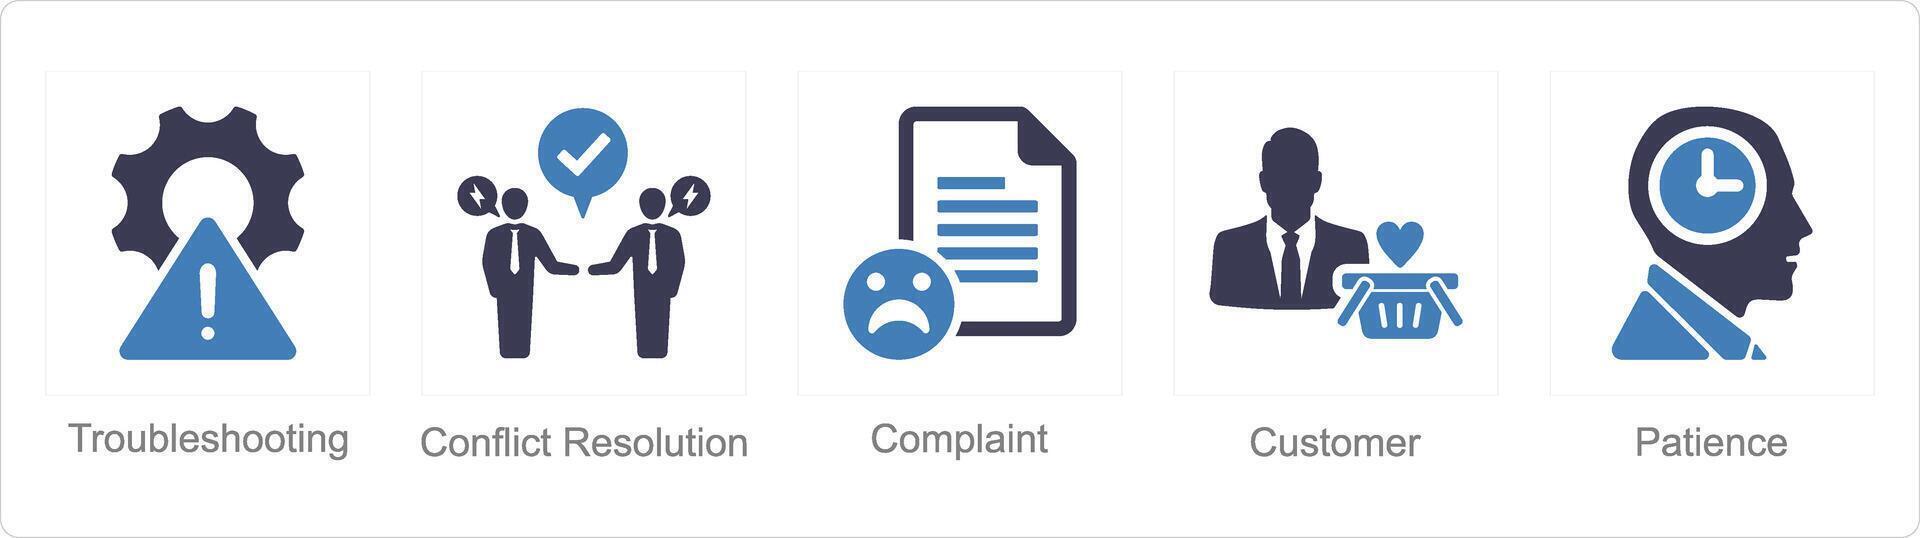 en uppsättning av 5 kund service ikoner som felsökning, konflikt upplösning, klagomål vektor